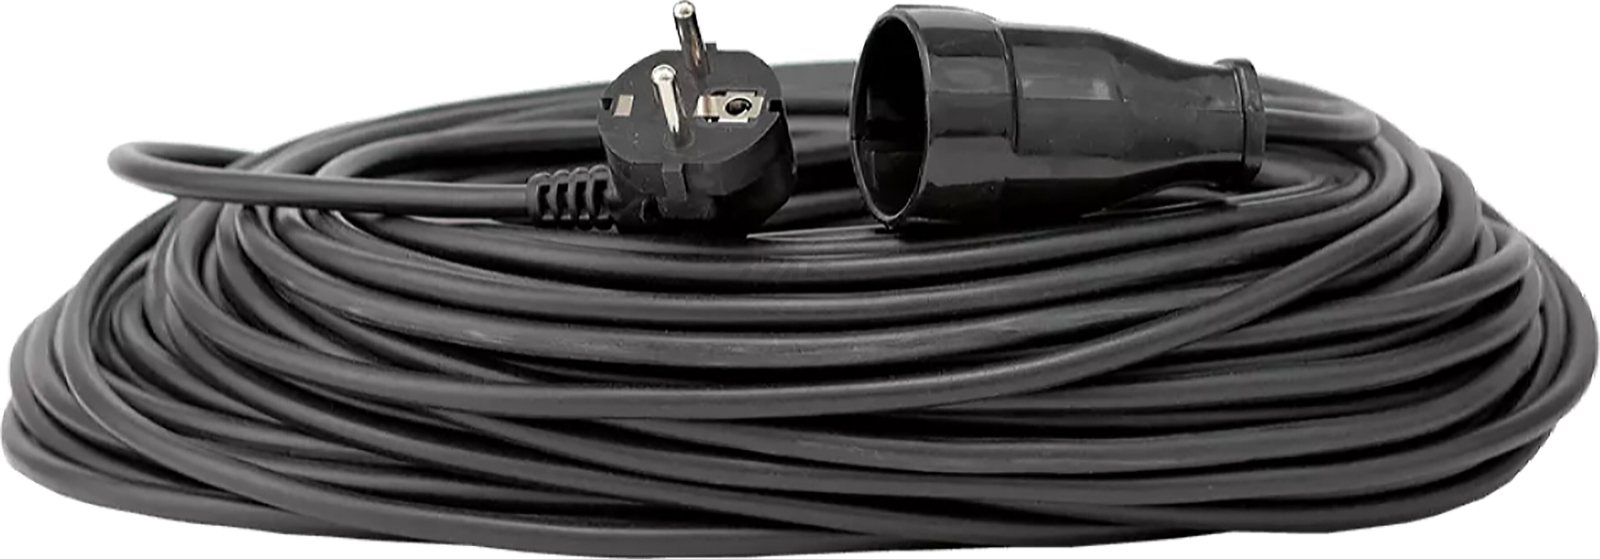 Удлинитель-шнур 30 м 1 розетка GLANZEN черный (ES-30-003)